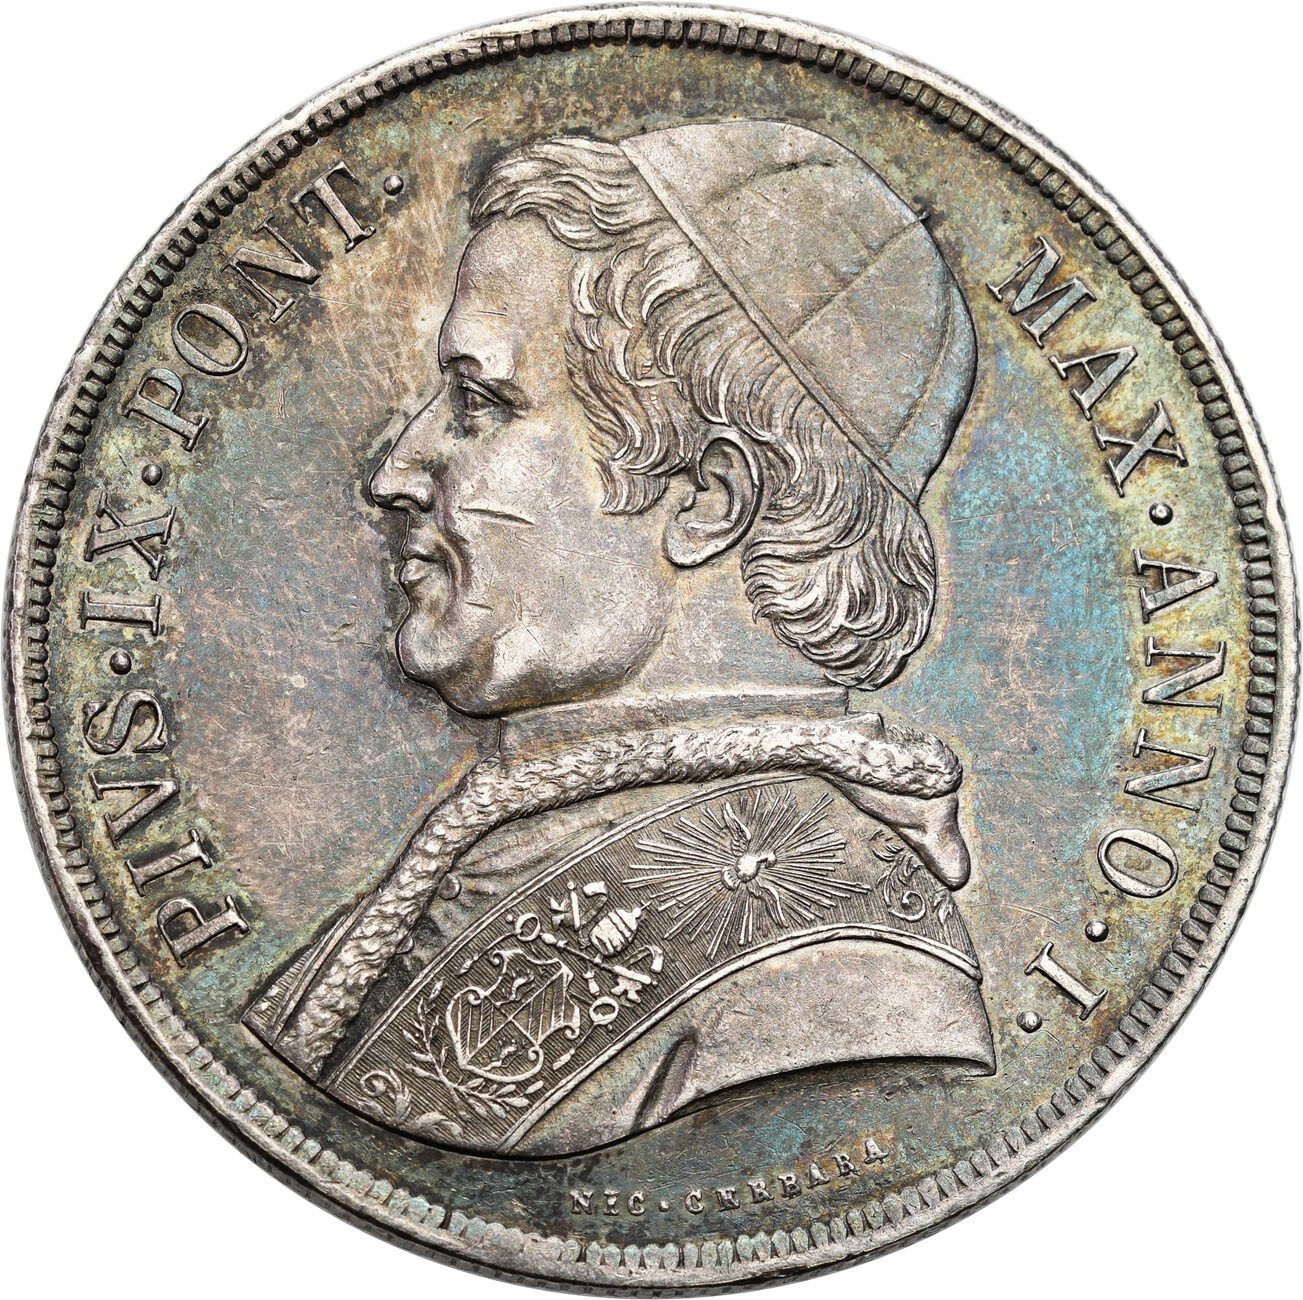 Włochy, Watykan. Pius IX (1846-1878). Scudo 1846 Anno I, Rzym